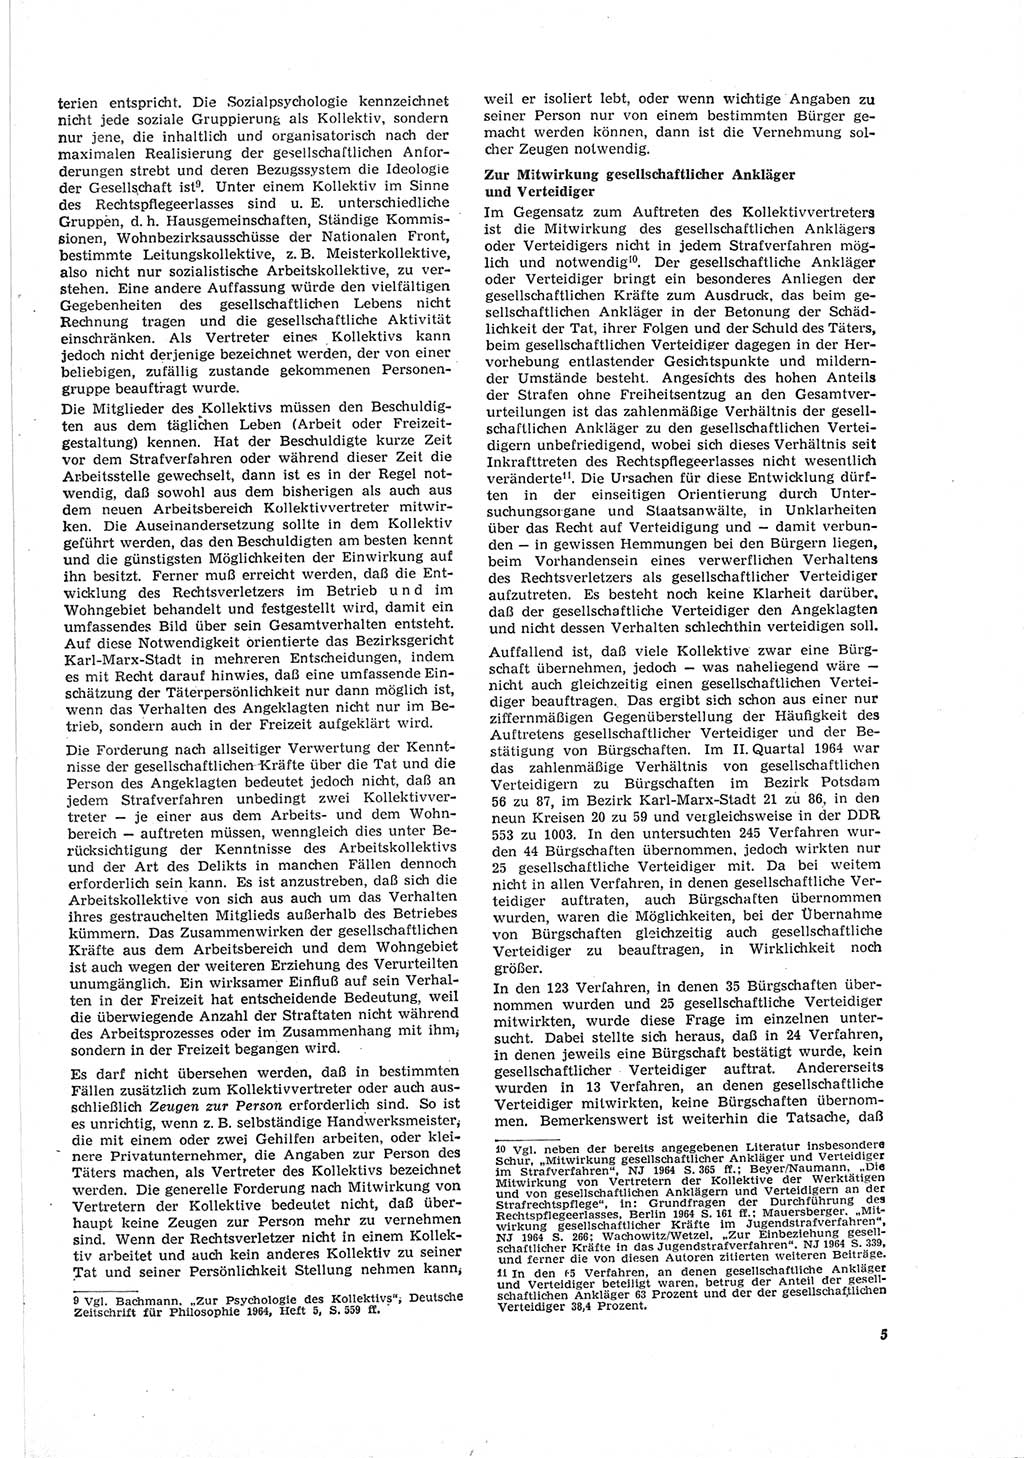 Neue Justiz (NJ), Zeitschrift für Recht und Rechtswissenschaft [Deutsche Demokratische Republik (DDR)], 19. Jahrgang 1965, Seite 5 (NJ DDR 1965, S. 5)